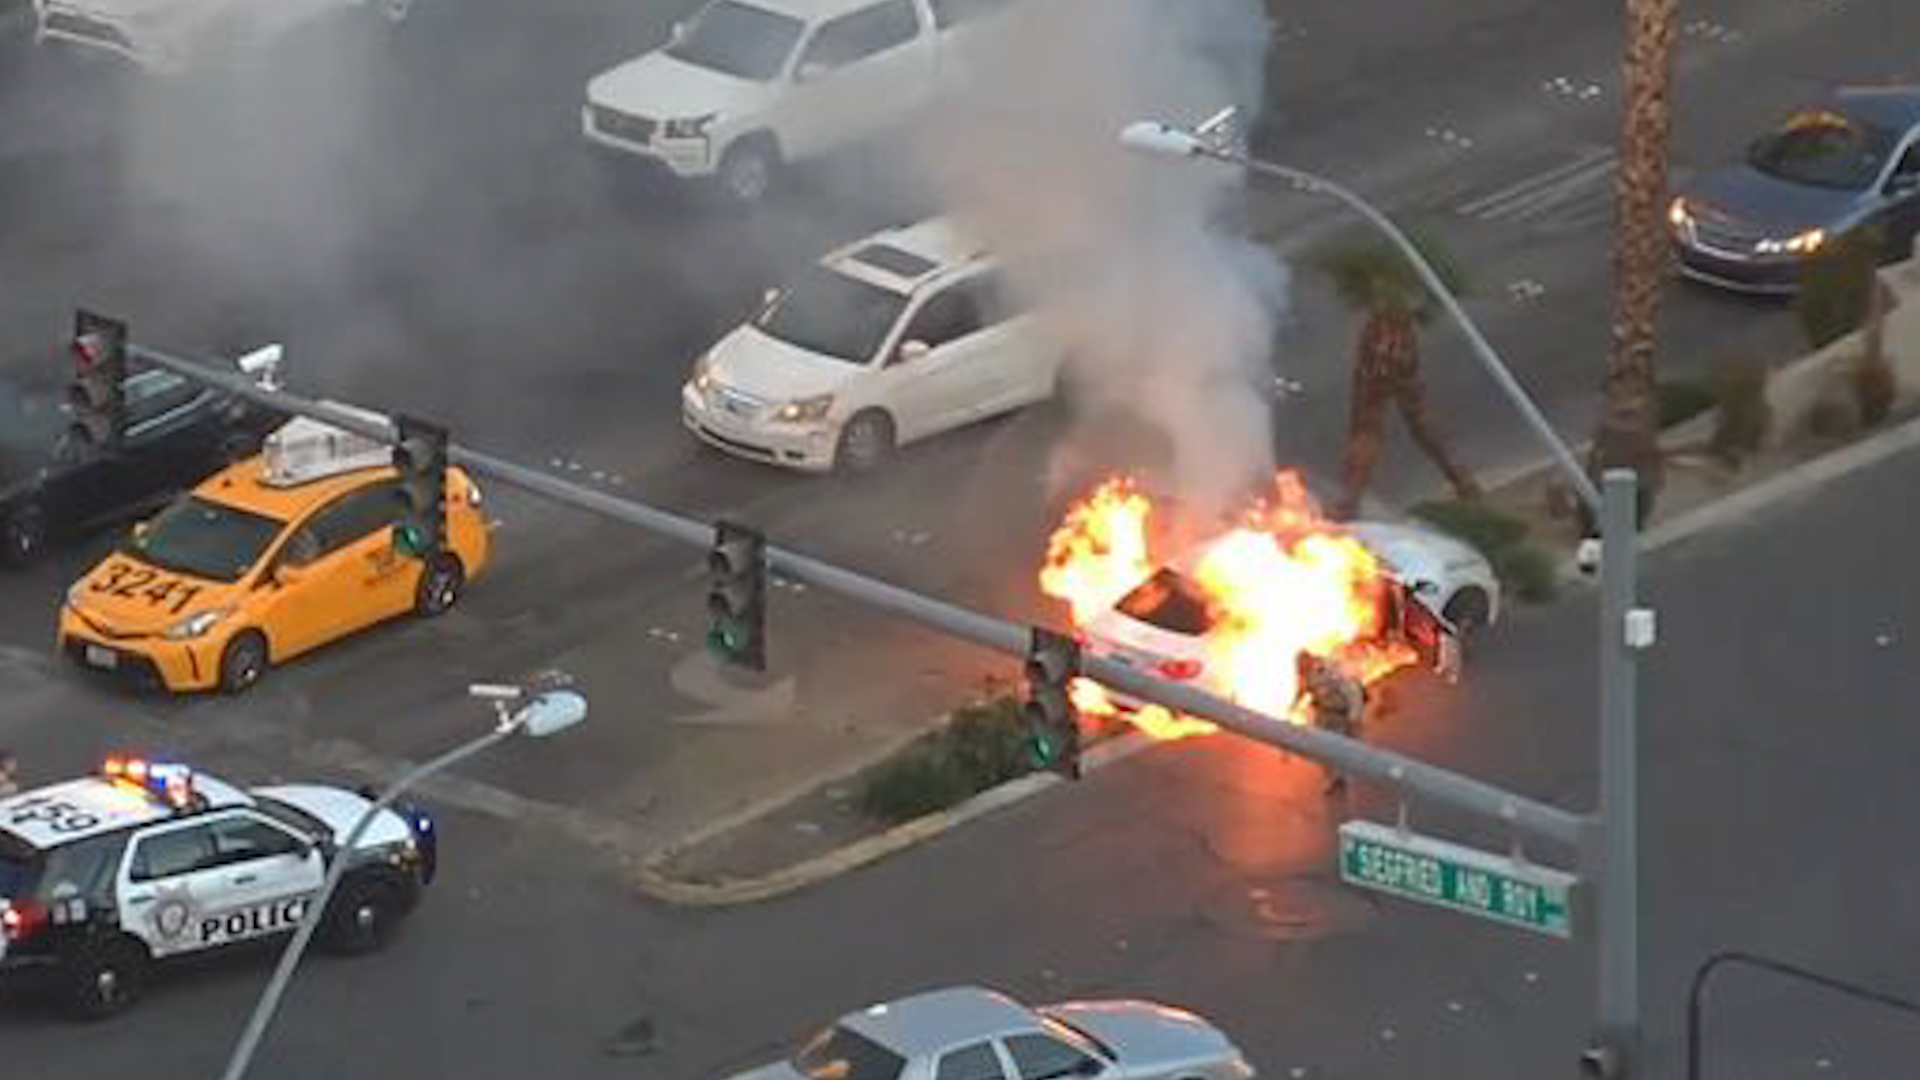 Kéo tài xế bất tỉnh ra khỏi chiếc xe bốc cháy ở Las Vegas - Ảnh 1.